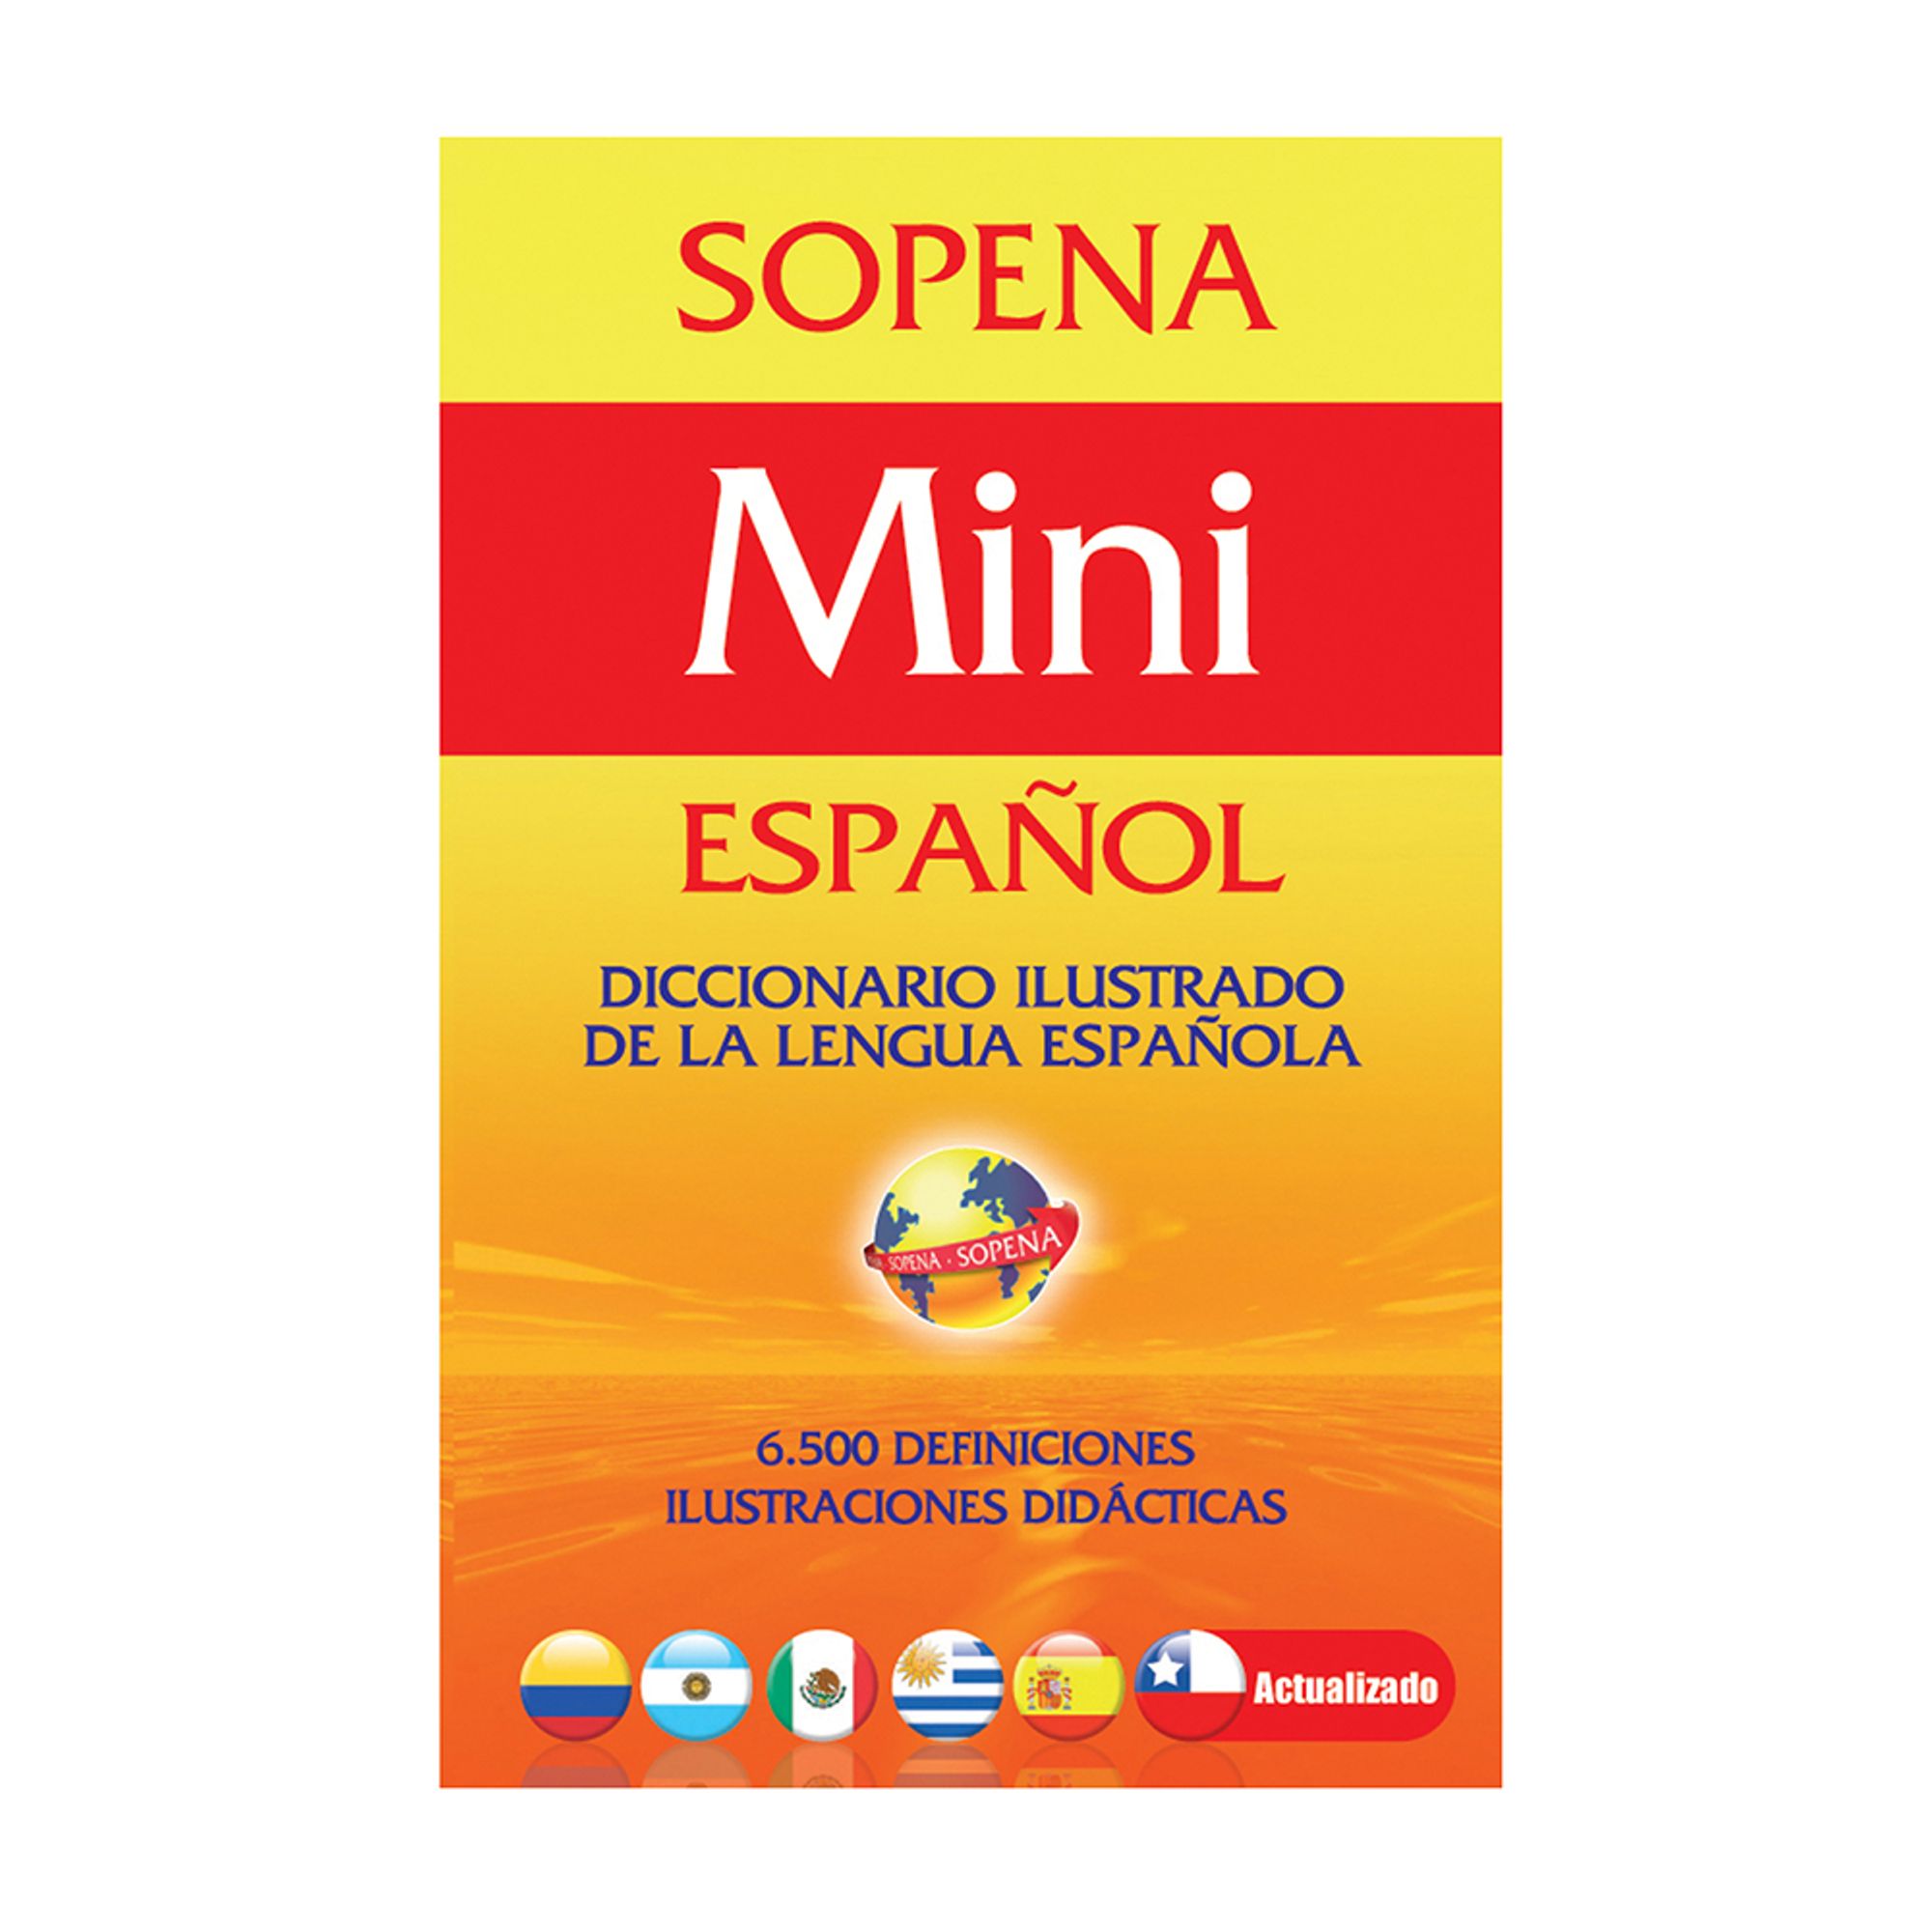 el diccionario en espanol